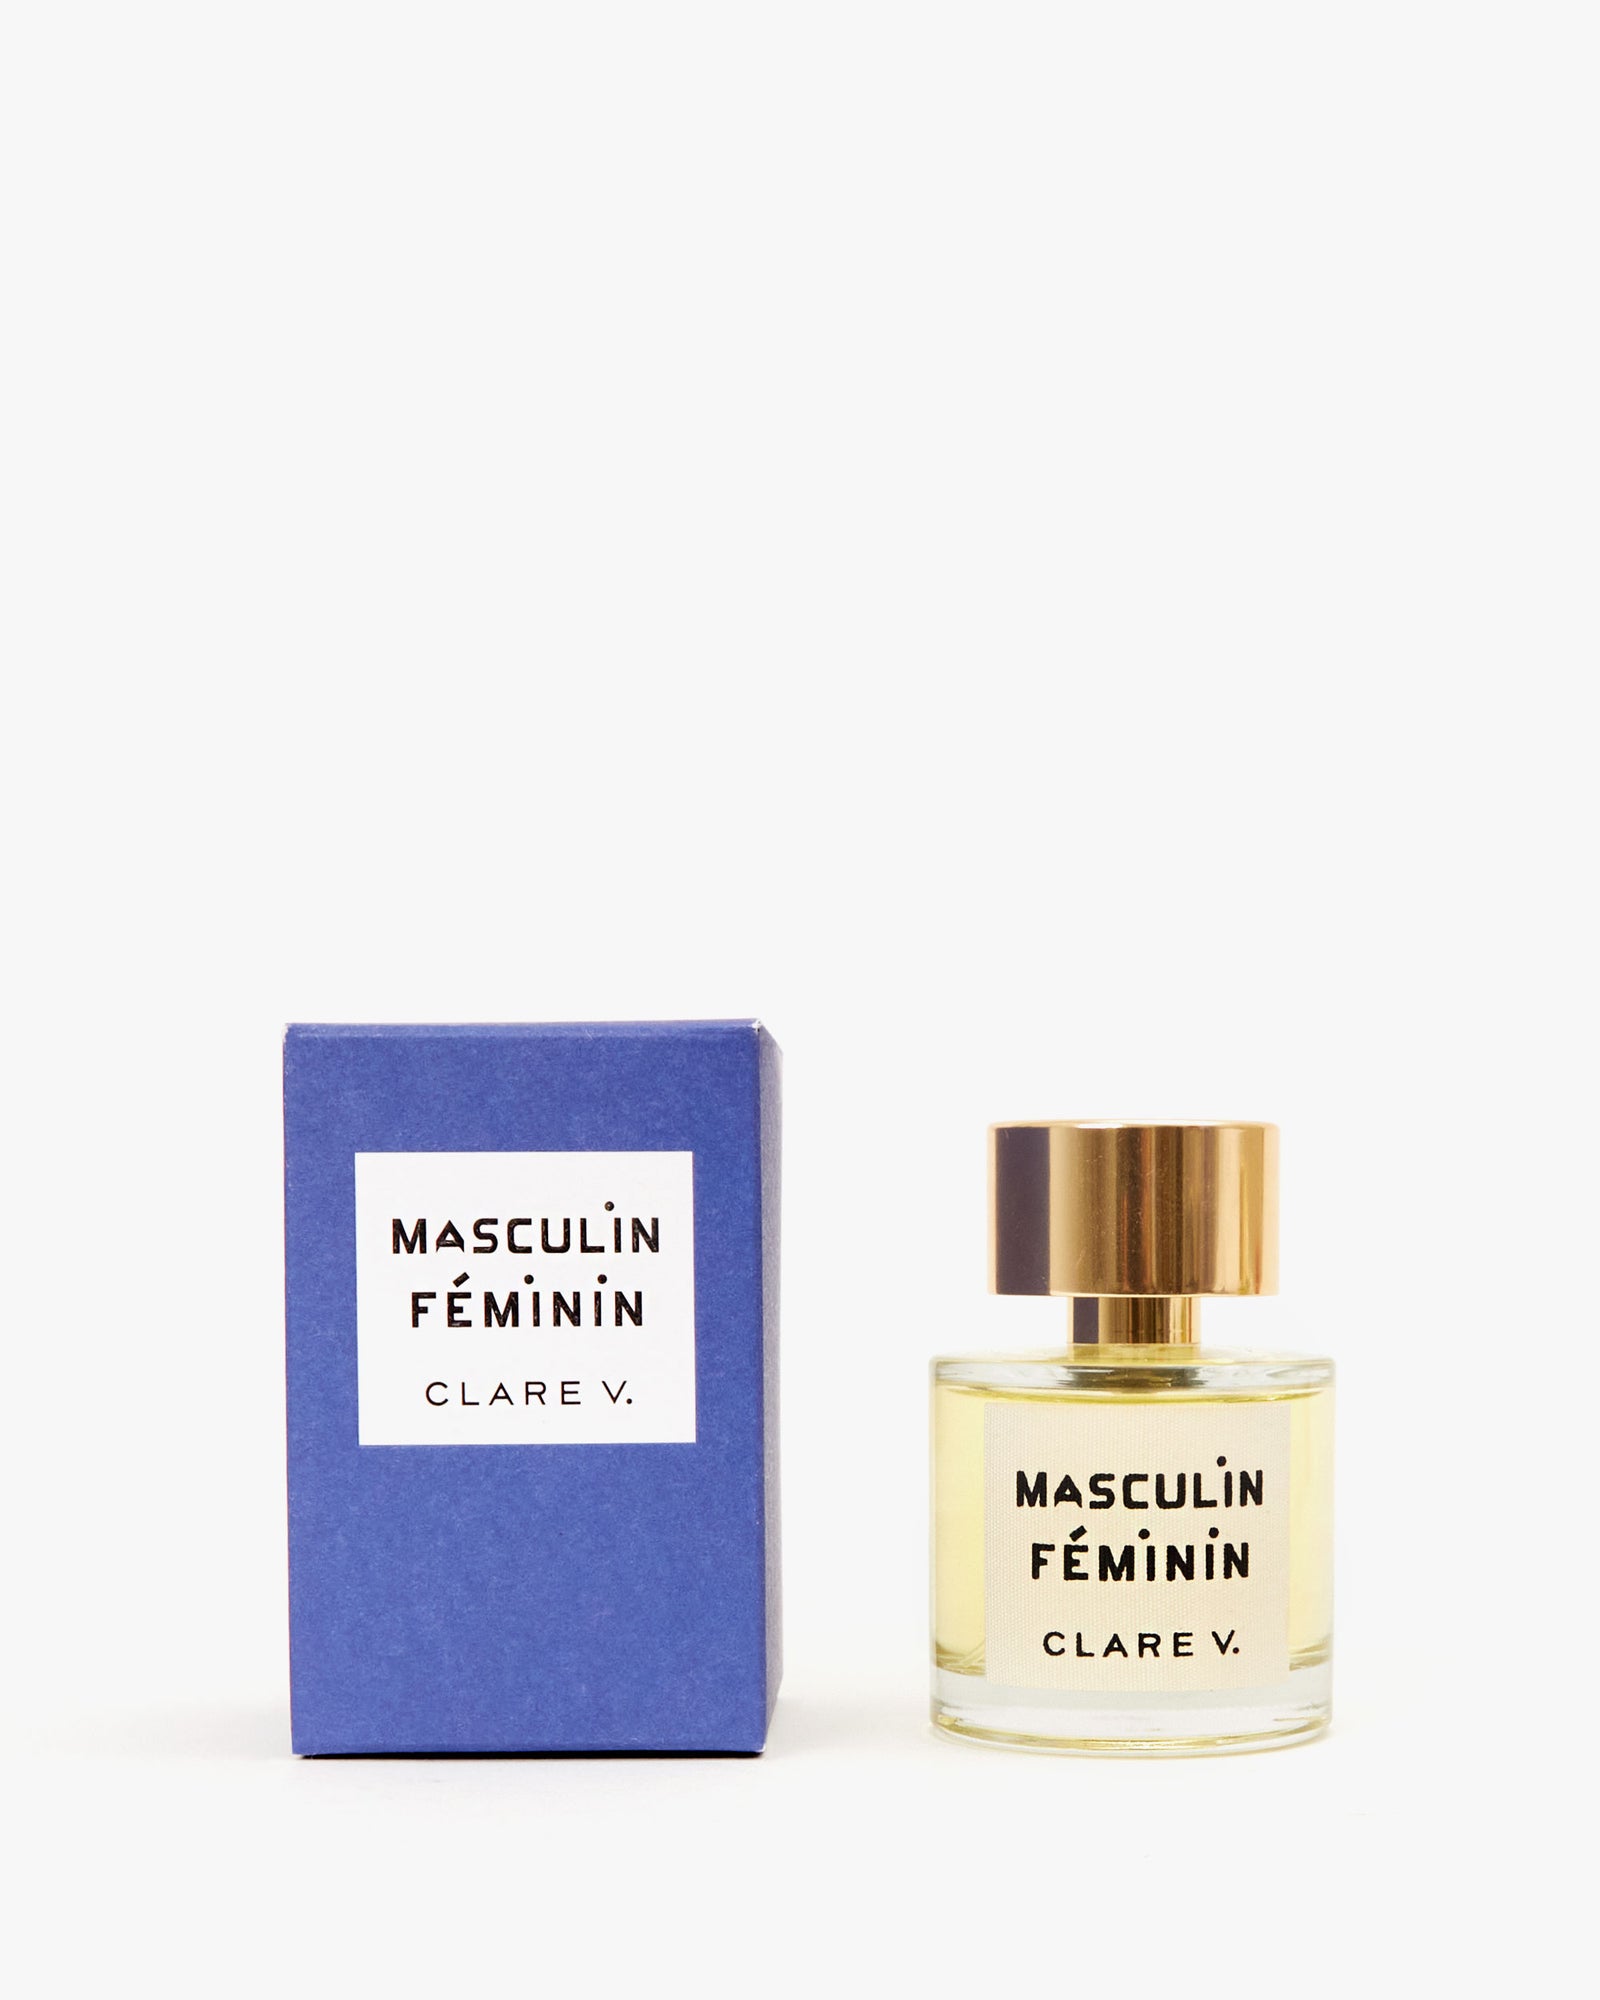 Masculin/Feminin Eau de Parfum next to its blue box